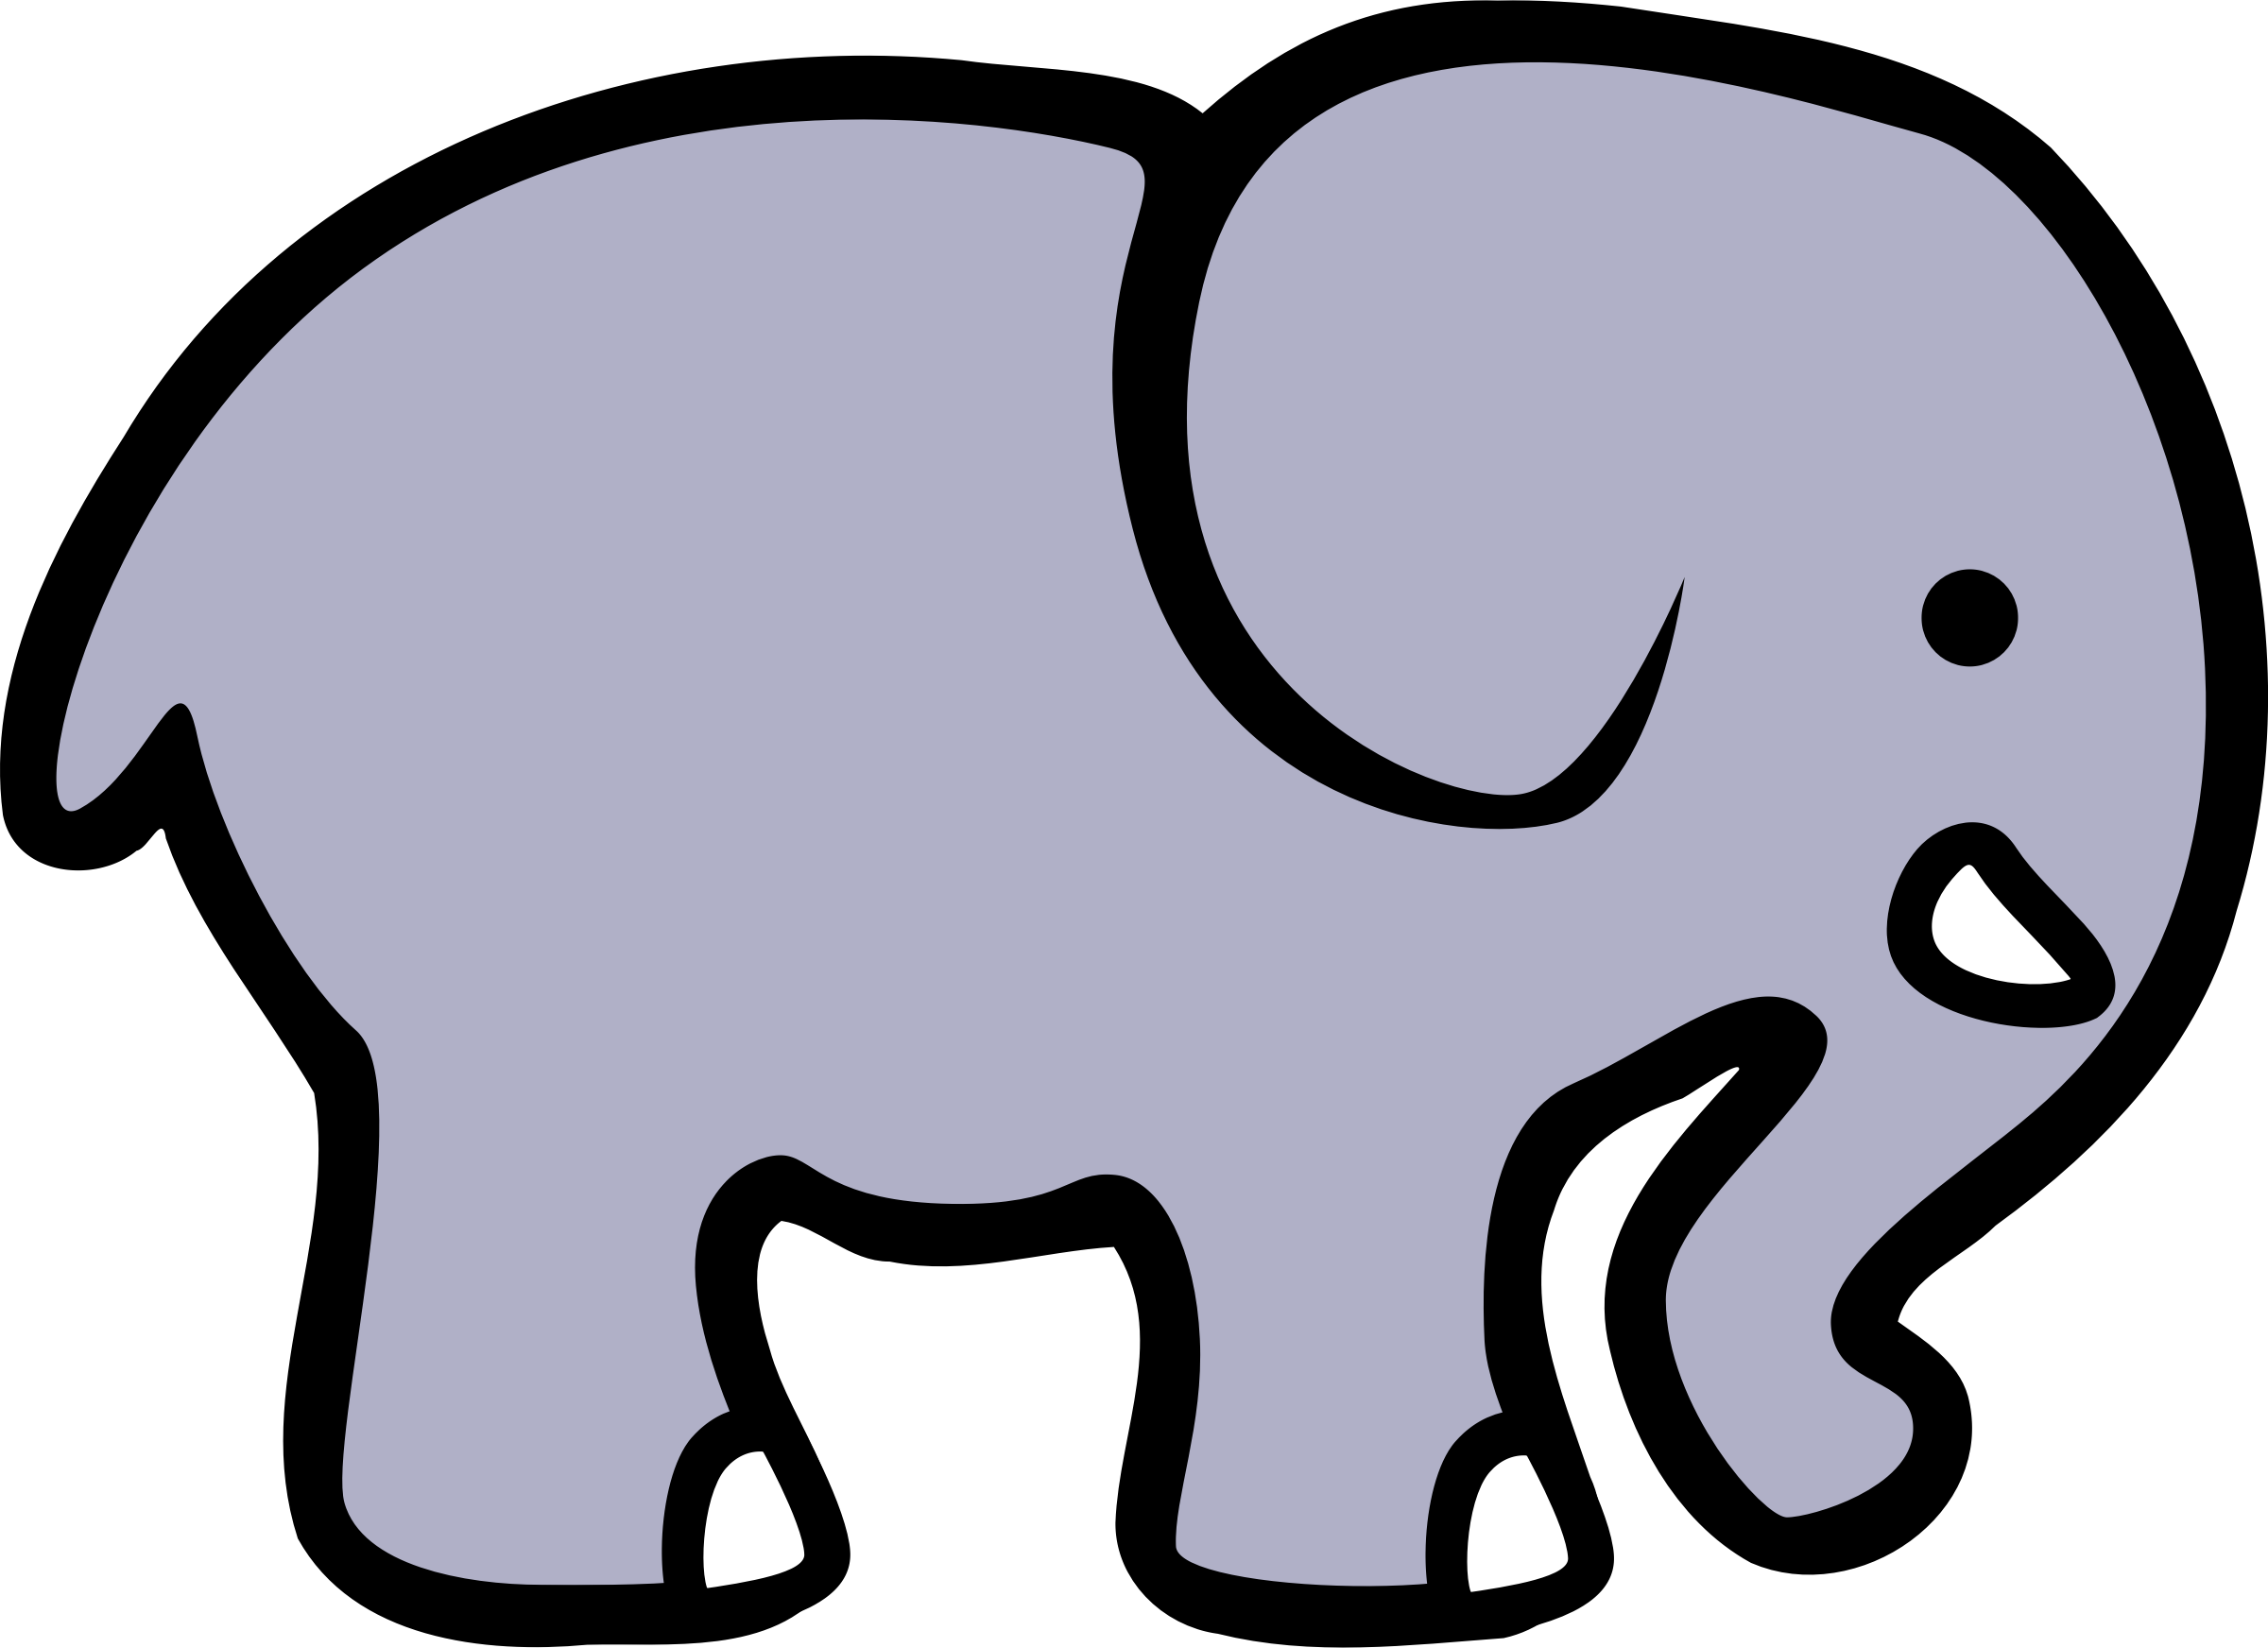 2D cartoon elephant by